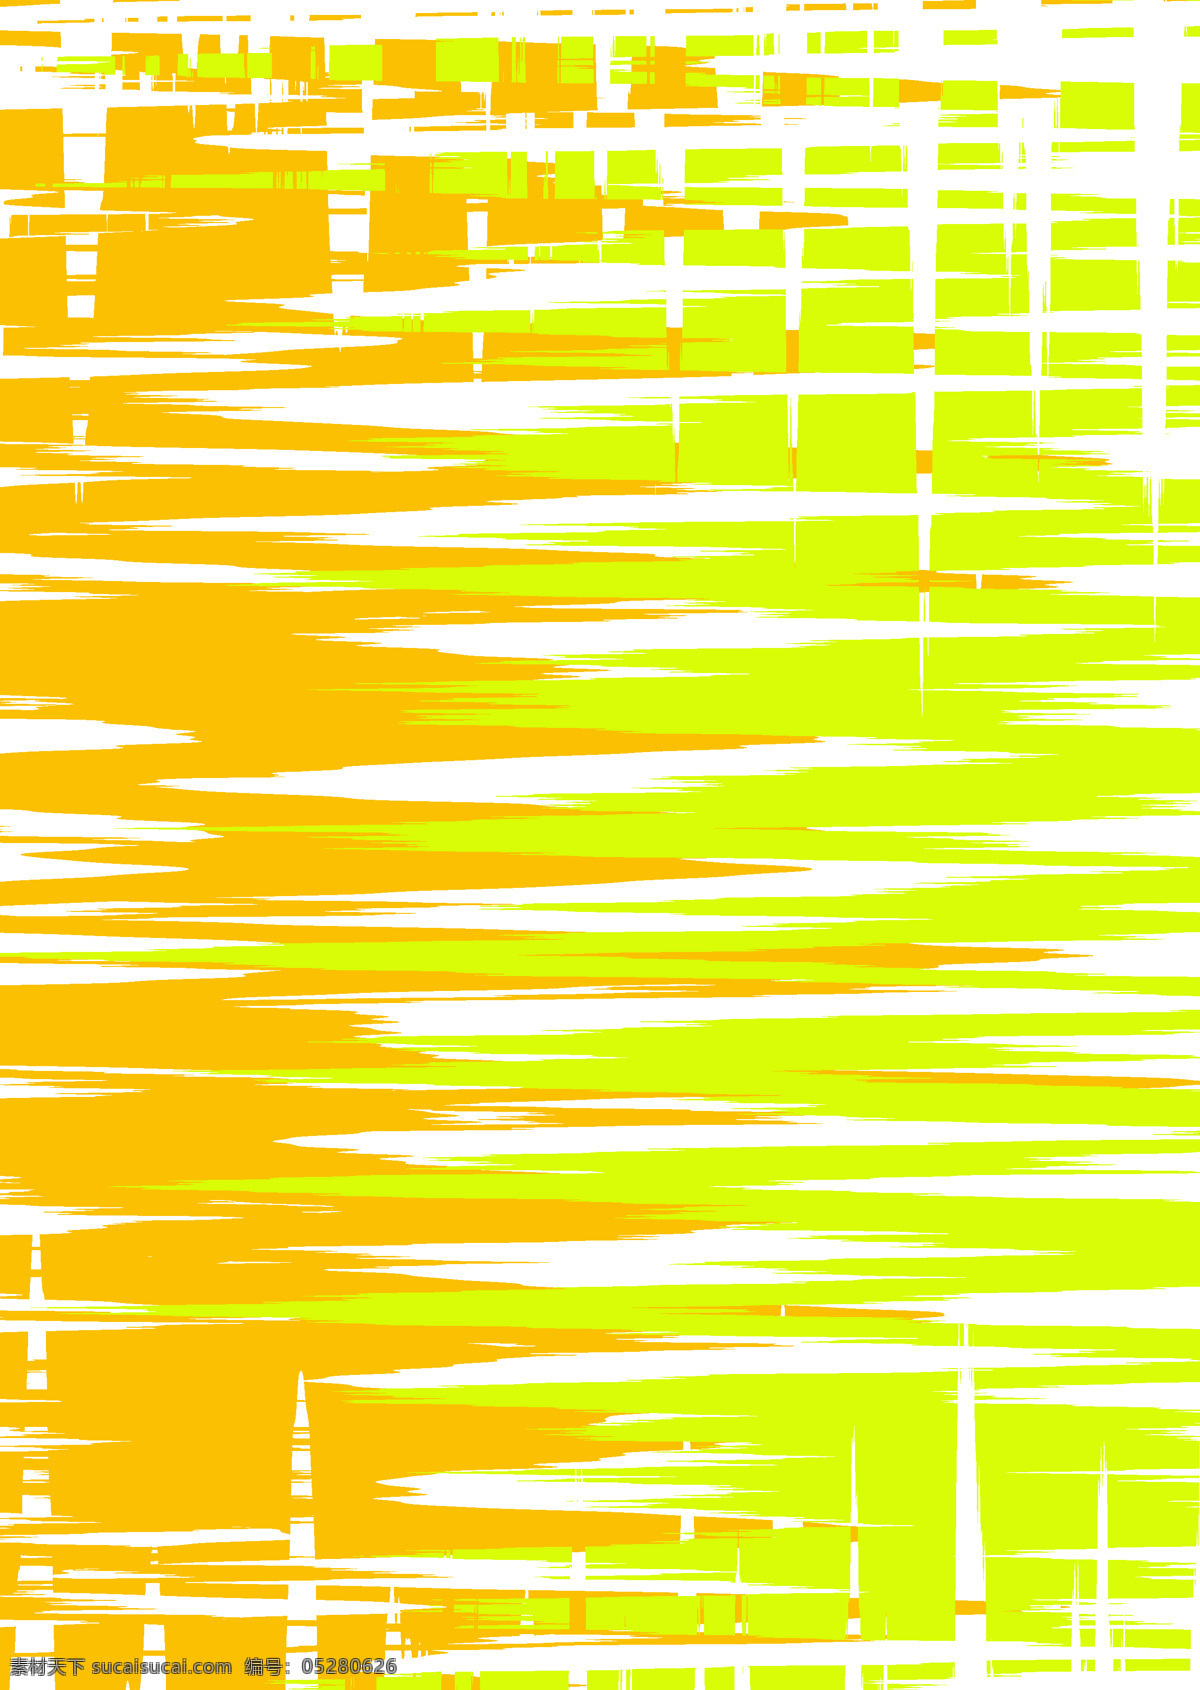 撞色 橘色 黄色 折痕 波浪 城市 扭曲 几何 双色 重合 背景 底纹边框 背景底纹